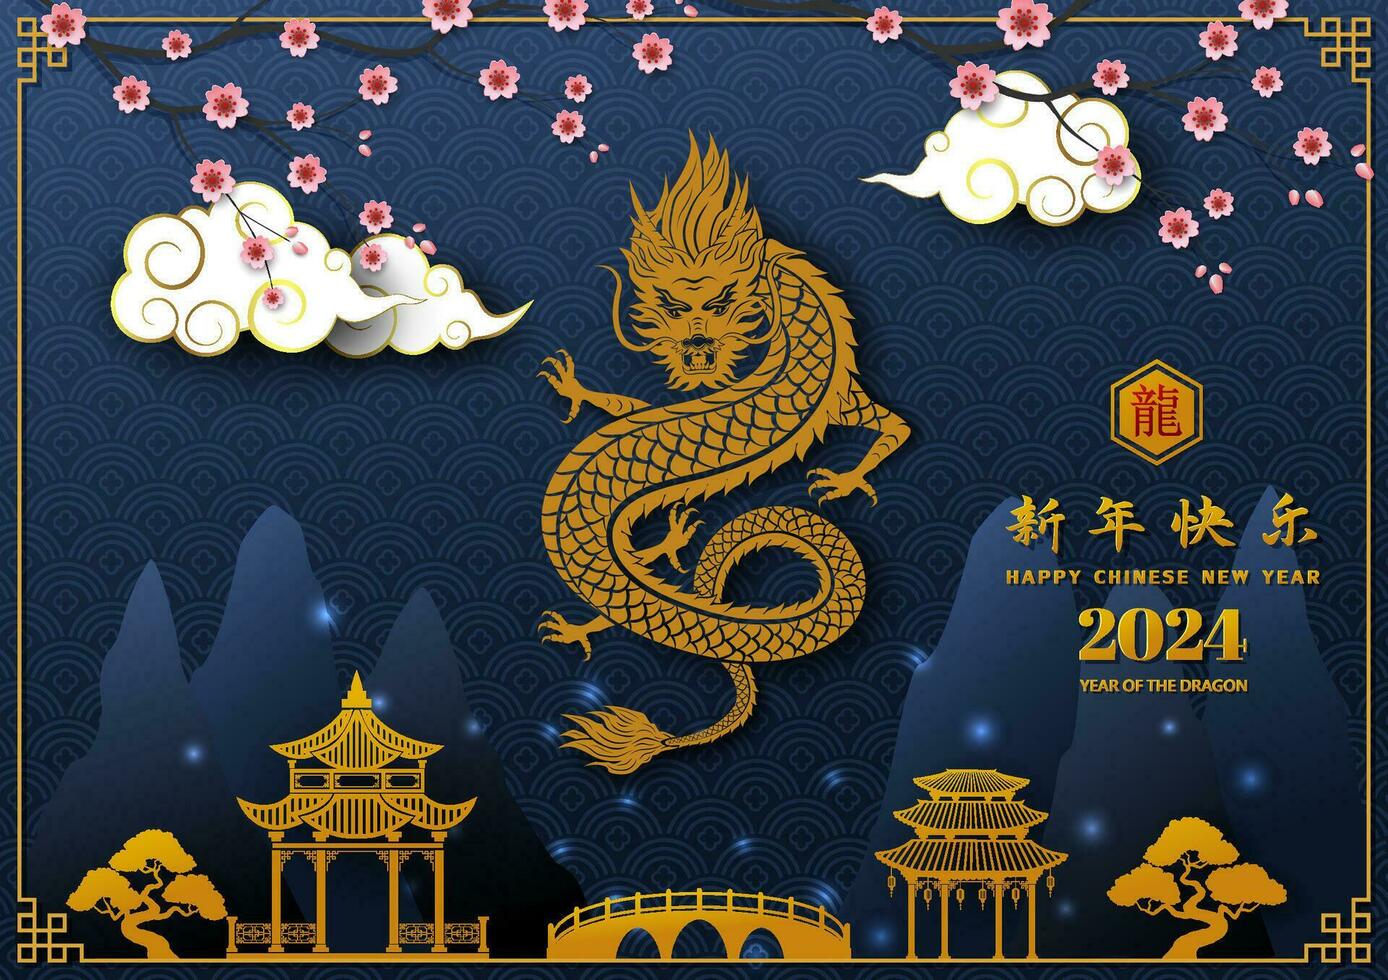 glücklich Chinesisch Neu Jahr 2024, feiern Thema mit Drachen Tierkreis Zeichen auf Kirsche blühen Nacht, chinesisch Übersetzen bedeuten glücklich Neu Jahr 2024,Jahr von das Drachen vektor